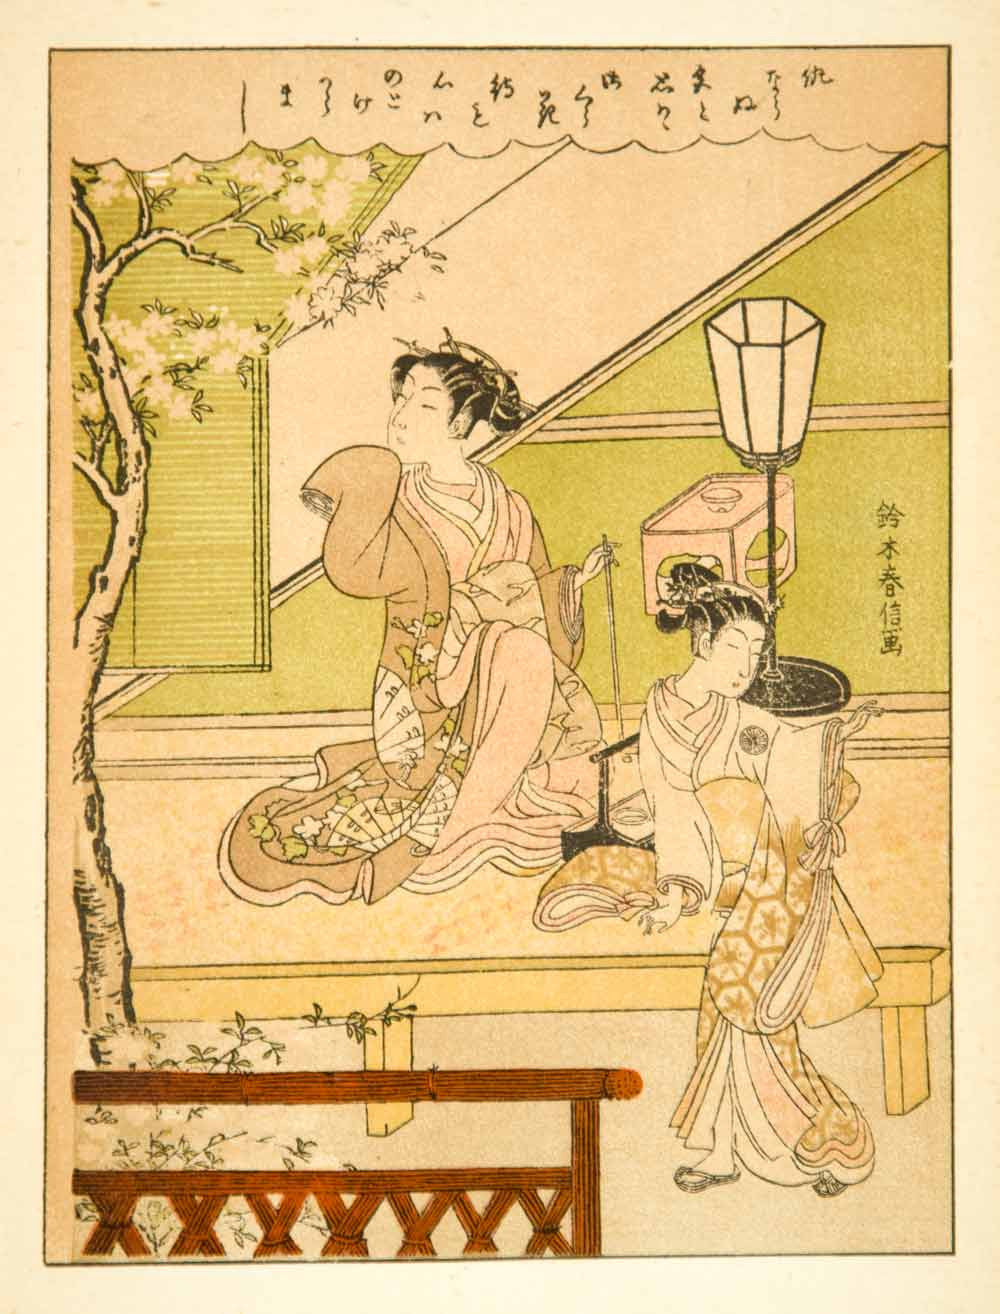 1897 Lithograph Suzuki Harunobu Yoshiwara Japanese Women Kimono Art Bench XAOA1 - Period Paper
